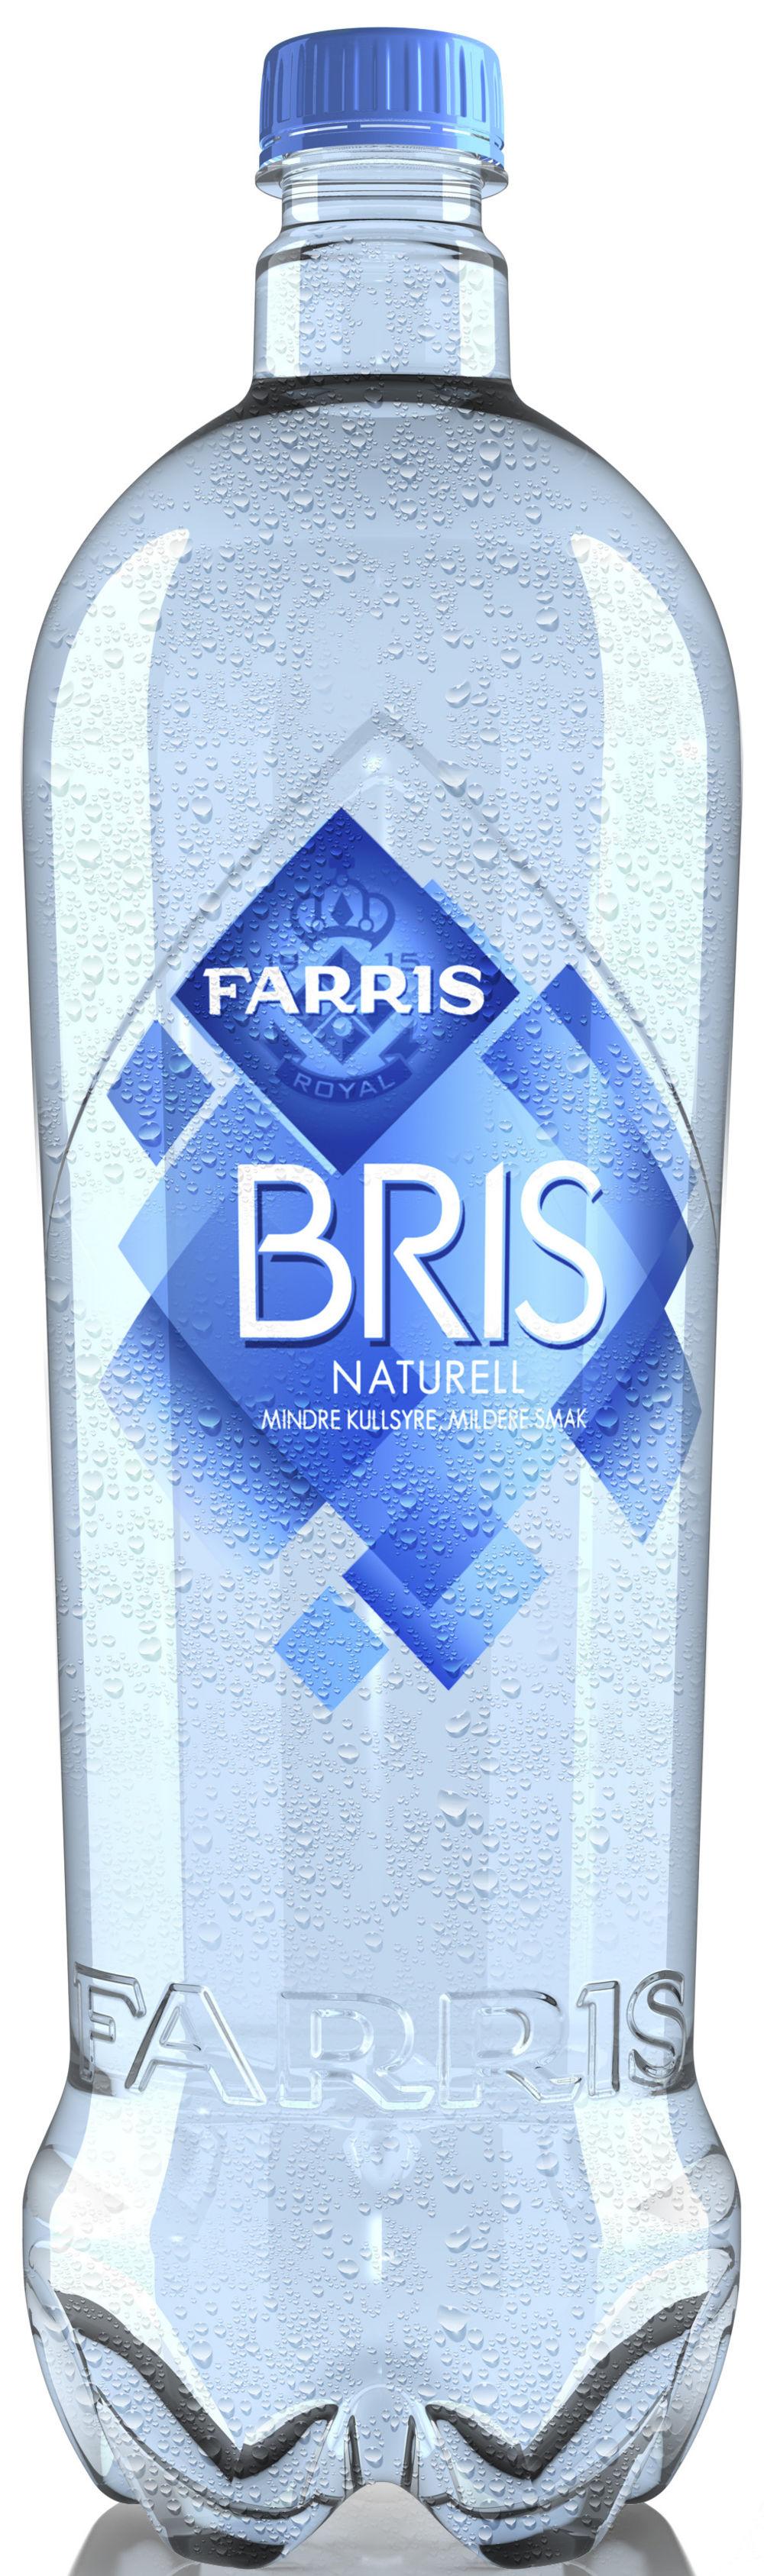 Farris Bris Naturell 1,5 l - inkl. pant